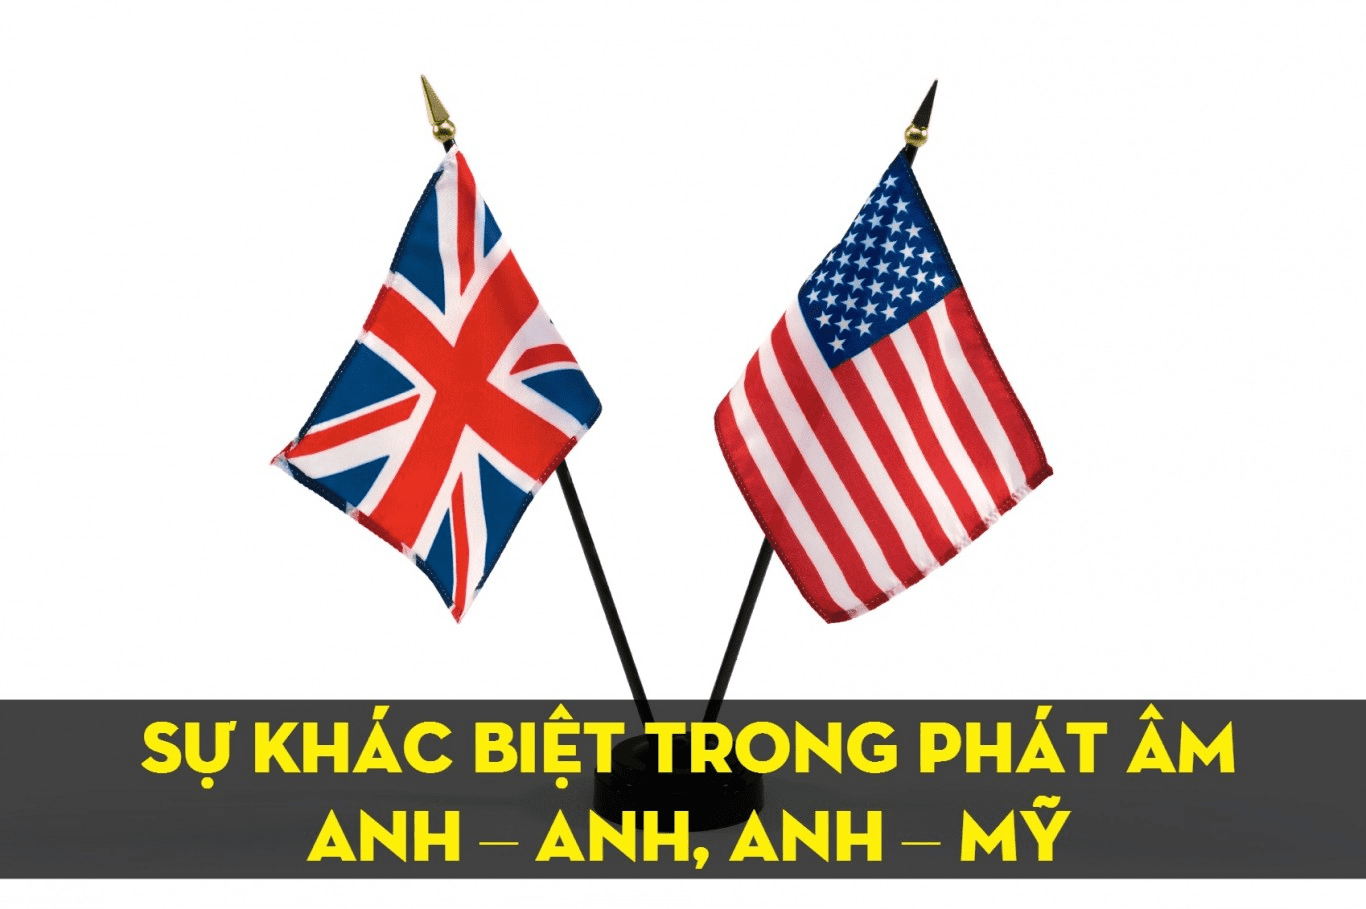 Sự khác biệt giữa tiếng Anh Anh và tiếng Anh Mỹ là gì?: Bạn đang muốn cải thiện trình độ tiếng Anh của mình nhưng không biết phải chọn học tiếng Anh Anh hay tiếng Anh Mỹ? Hãy đến xem hình về từ khóa \